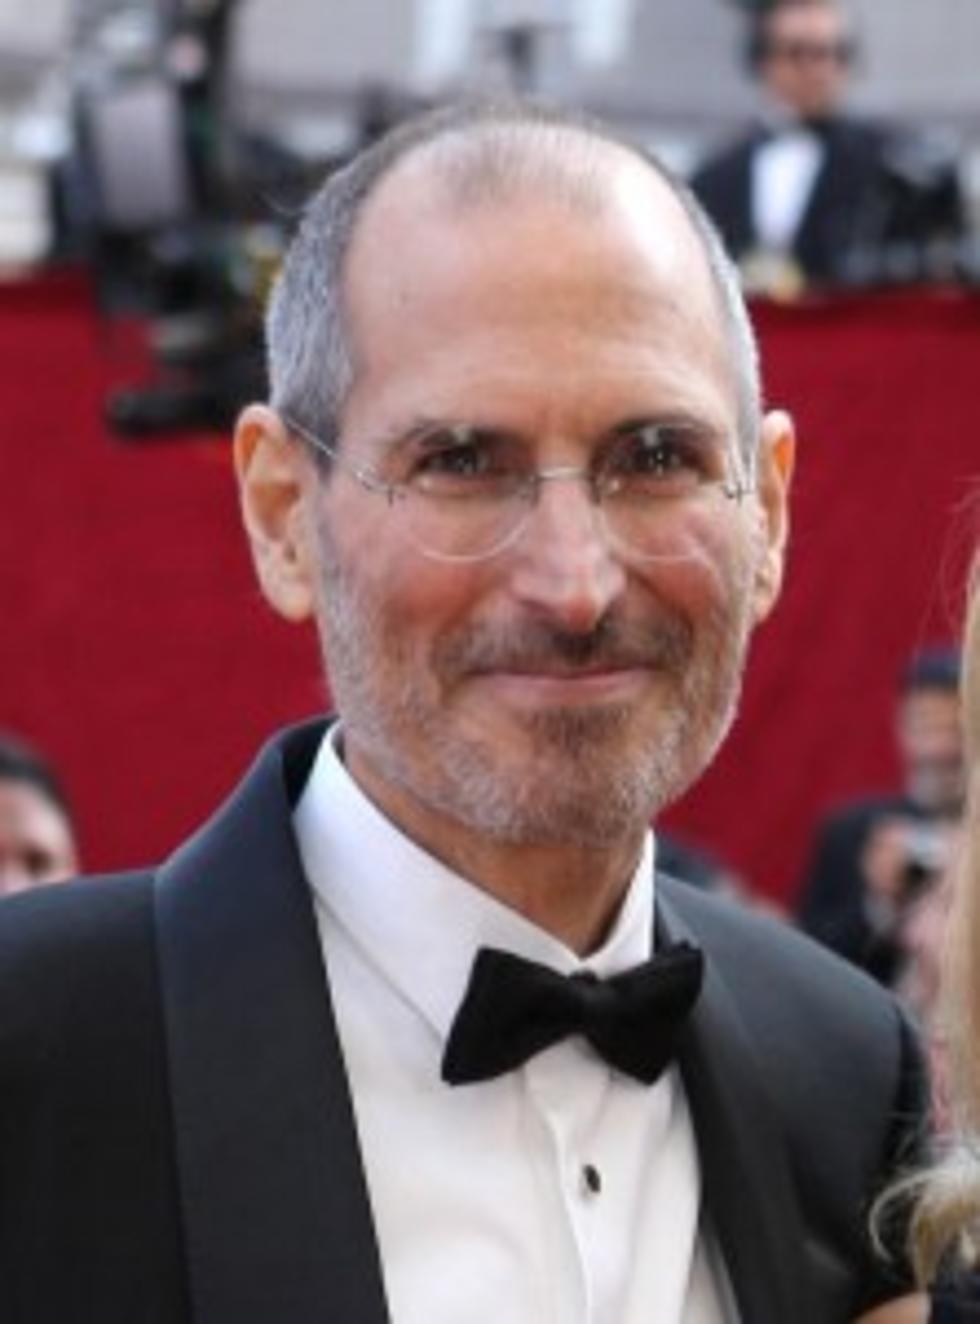 Steve Jobs Steps Down as CEO of Apple